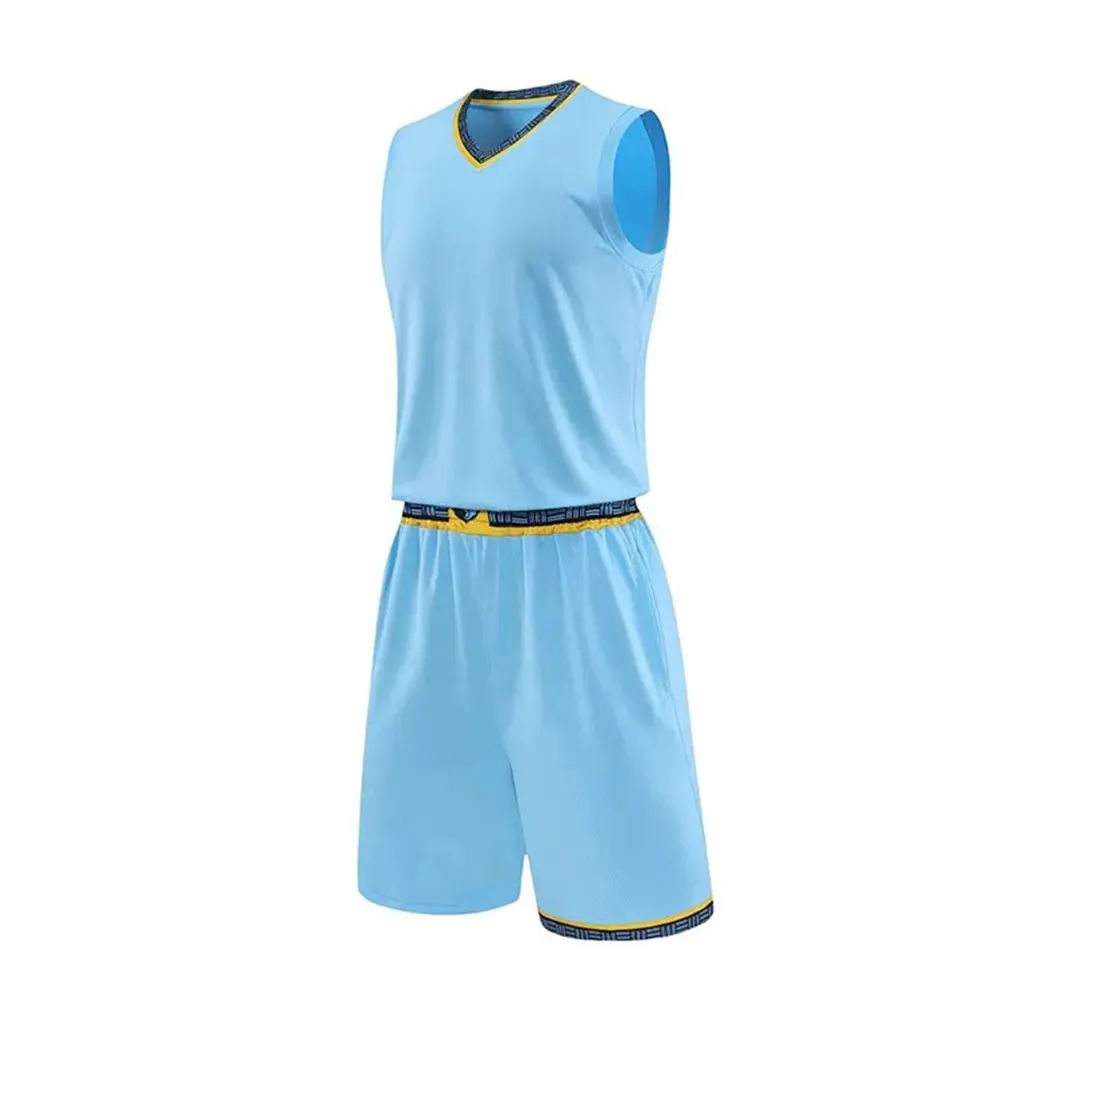 Warm Up maglia da basket di alta qualità nera e gialla personalizzata reversibile da basket indossare uniforme sublimata